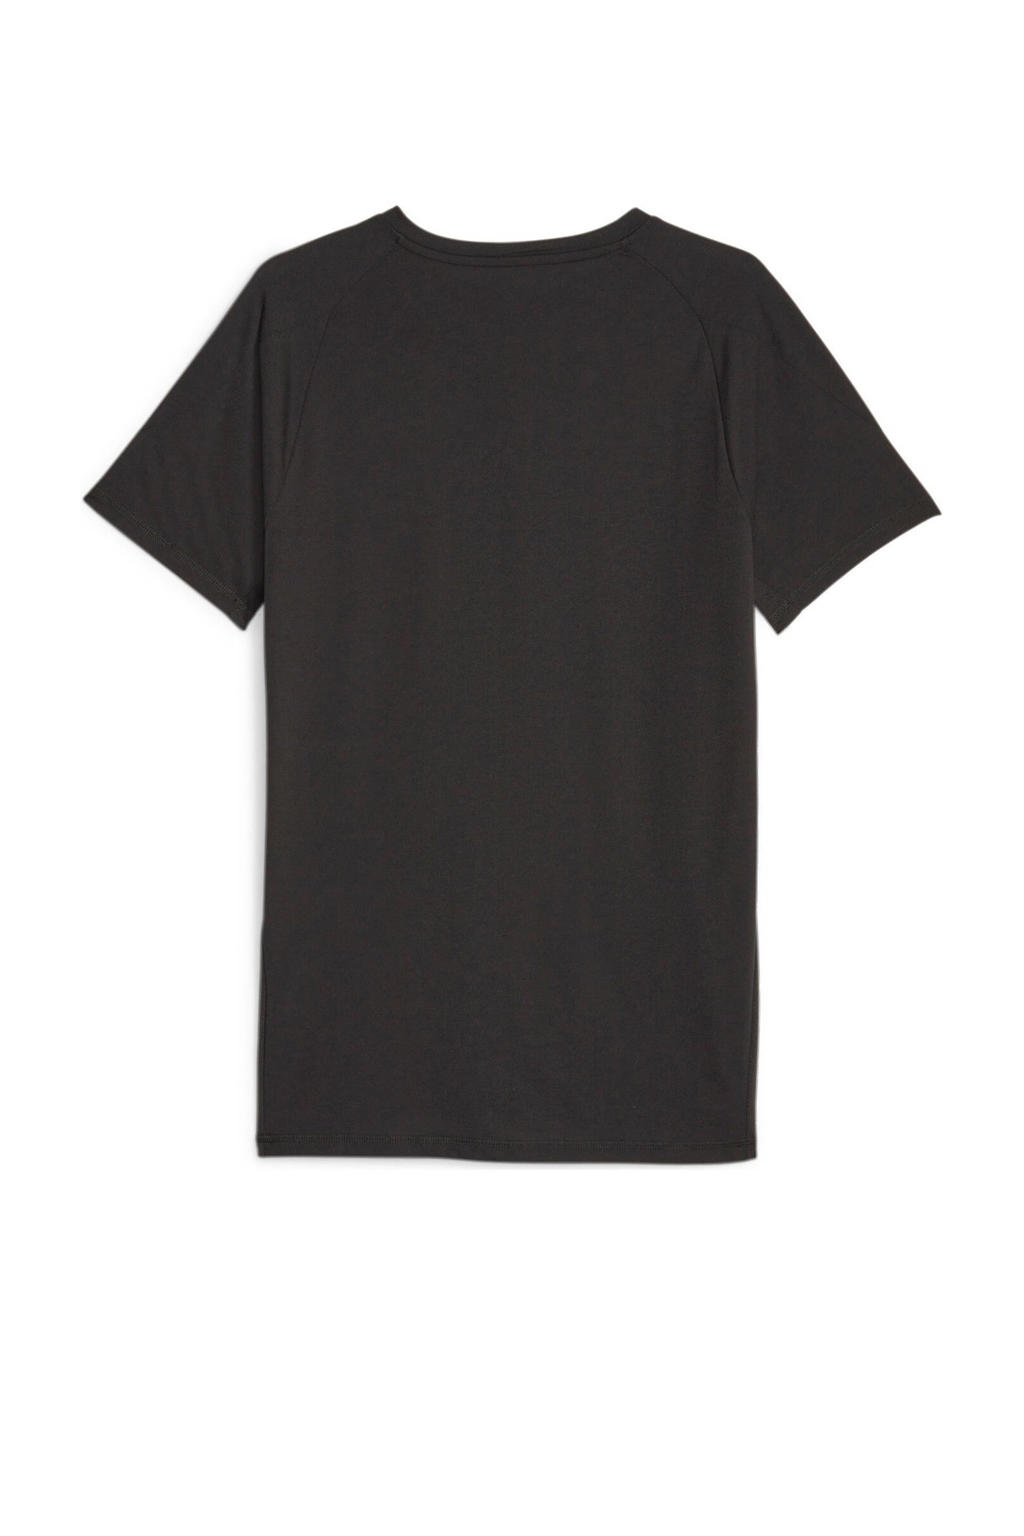 Zwarte heren Puma T-shirt van gerecycled polyester met logo dessin, korte mouwen en ronde hals